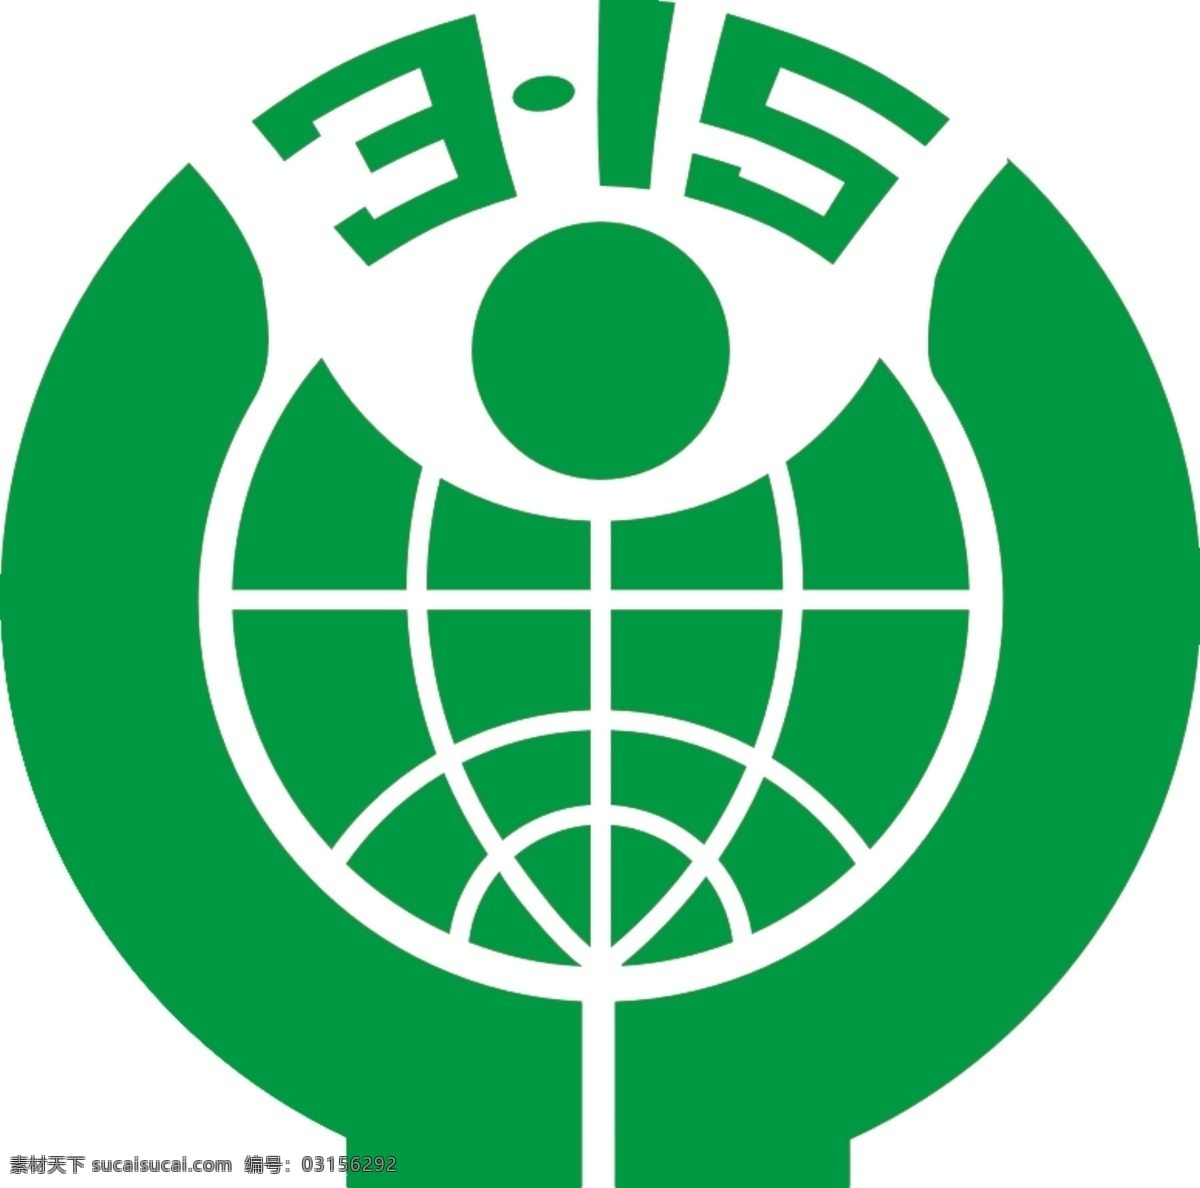 3.15维权 打假 绿色 315维权 logo psd格式 标志图标 公共标识标志